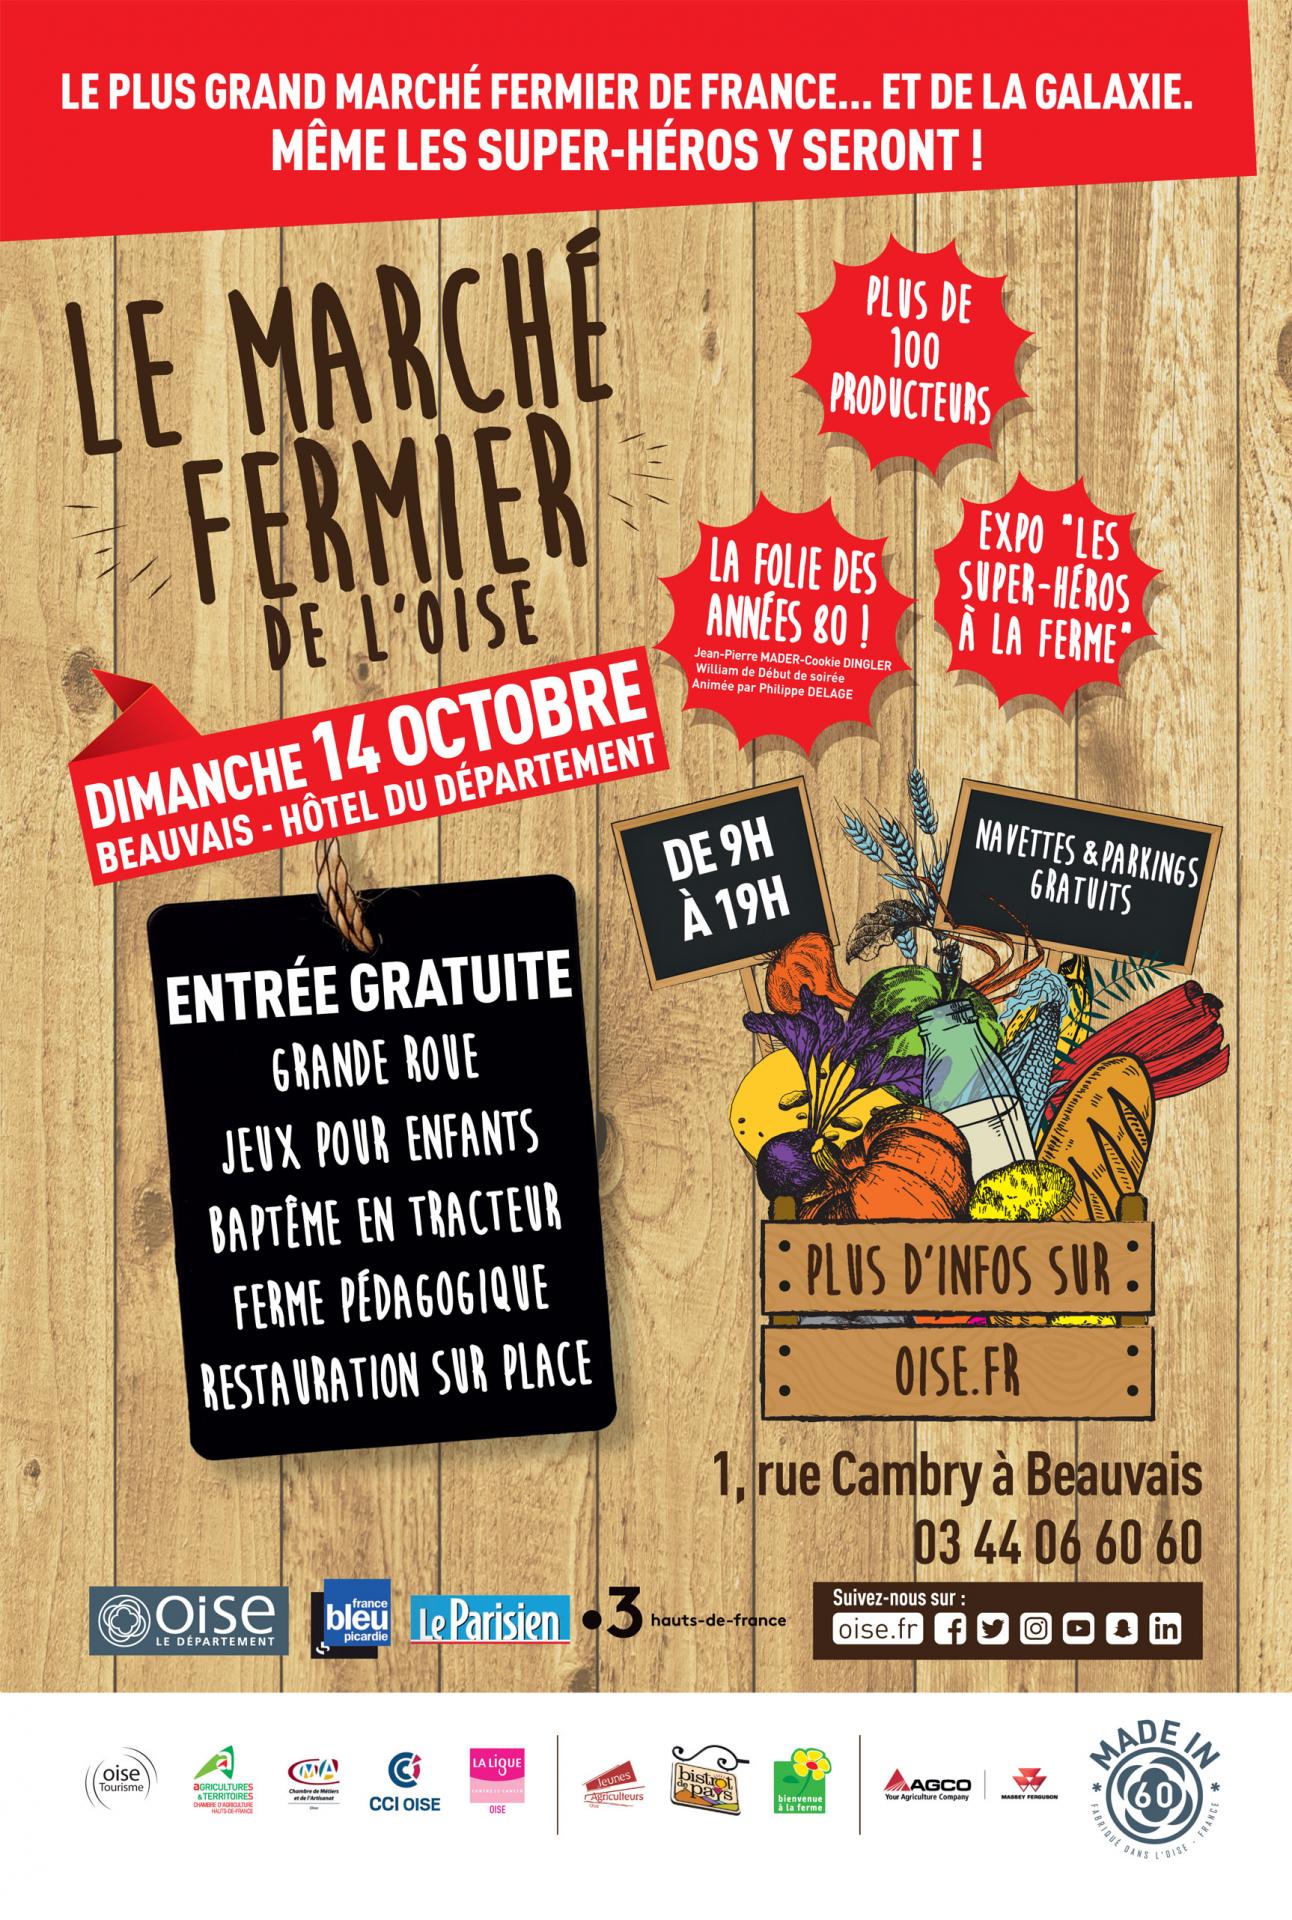 Le plus grand Marché Fermier de France : dimanche 14 octobre 2018 à Beauvais